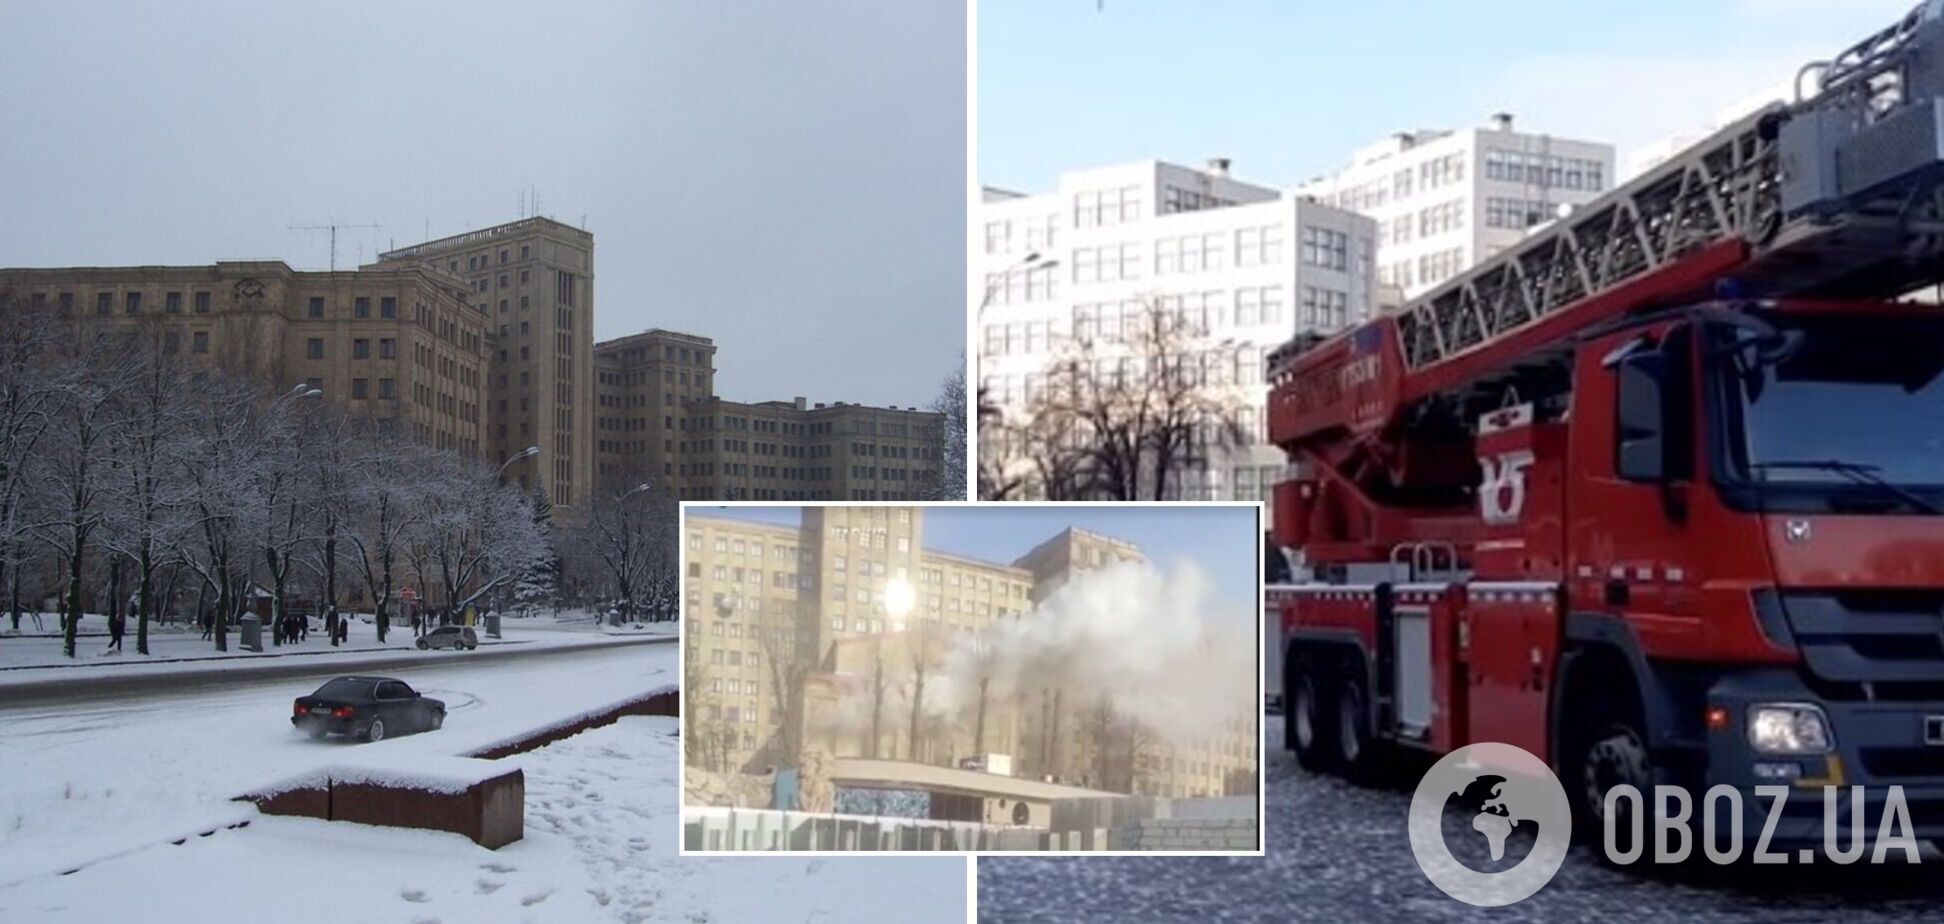 В университете Каразина вспыхнул пожар